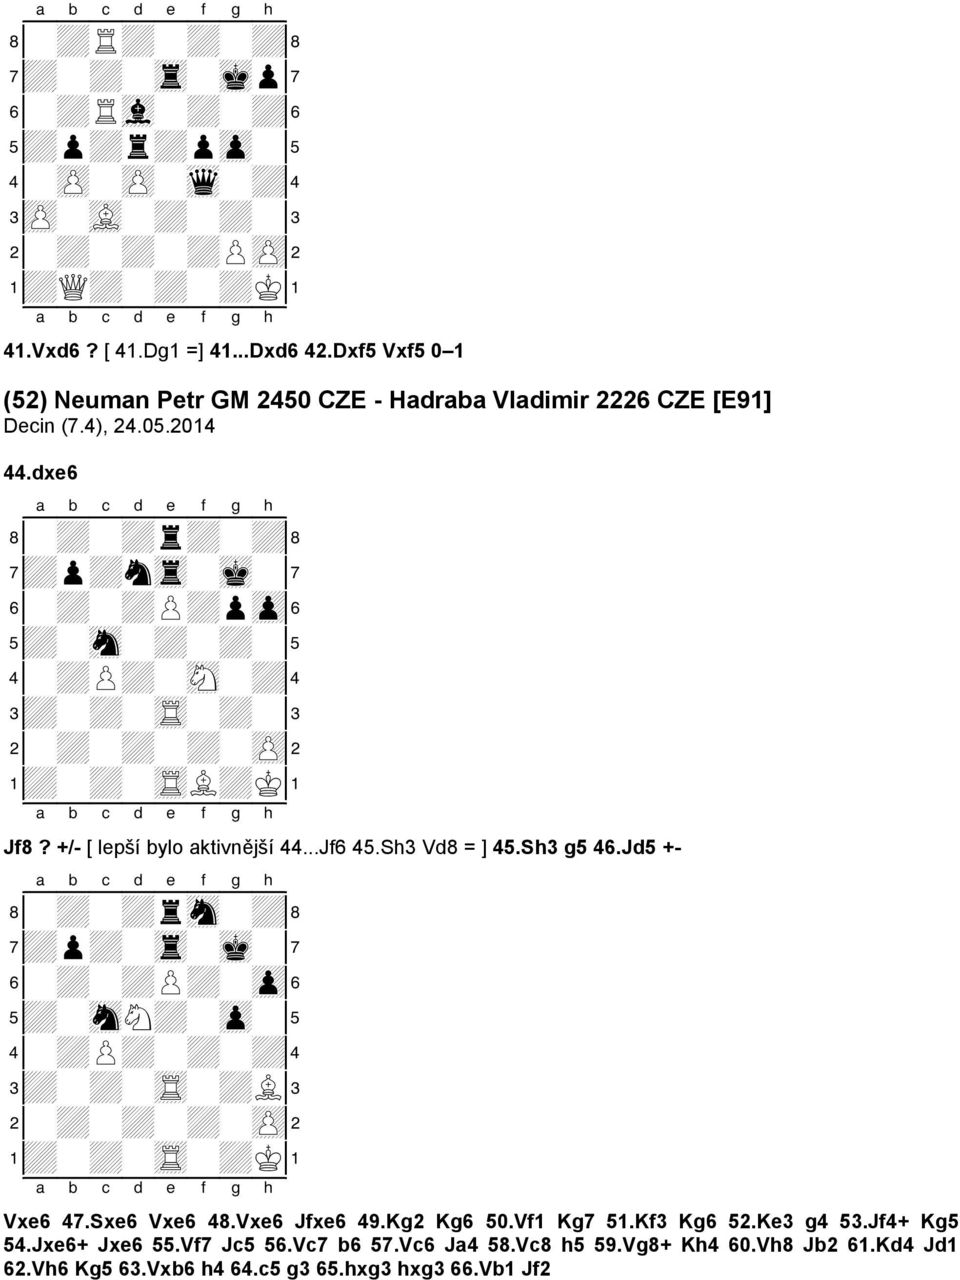 dxe6 8-+-+r+-+( 7+p+ntr-mk-' 6-+-+P+pzp& 5+-sn-+-+-% 4-+P+-sN-+$ 3+-+-tR-+-# 2-+-+-+-zP" 1+-+-tRL+K! Jf8? +/- [ lepší bylo aktivnější 44...Jf6 45.Sh3 Vd8 = ] 45.Sh3 g5 46.